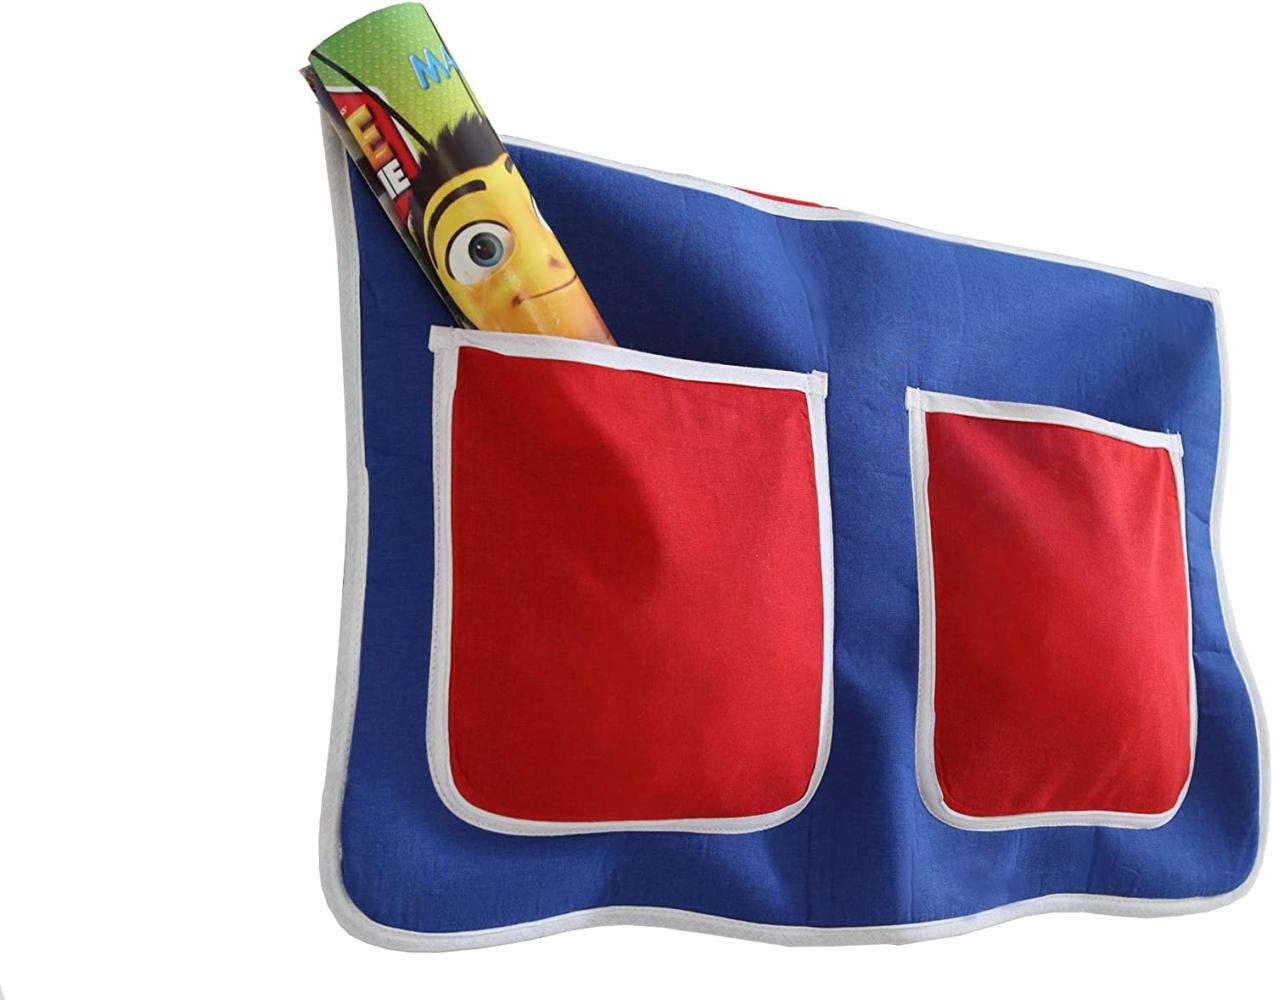 Bett-Tasche für Kinderbetten - blau-rot Bild 1